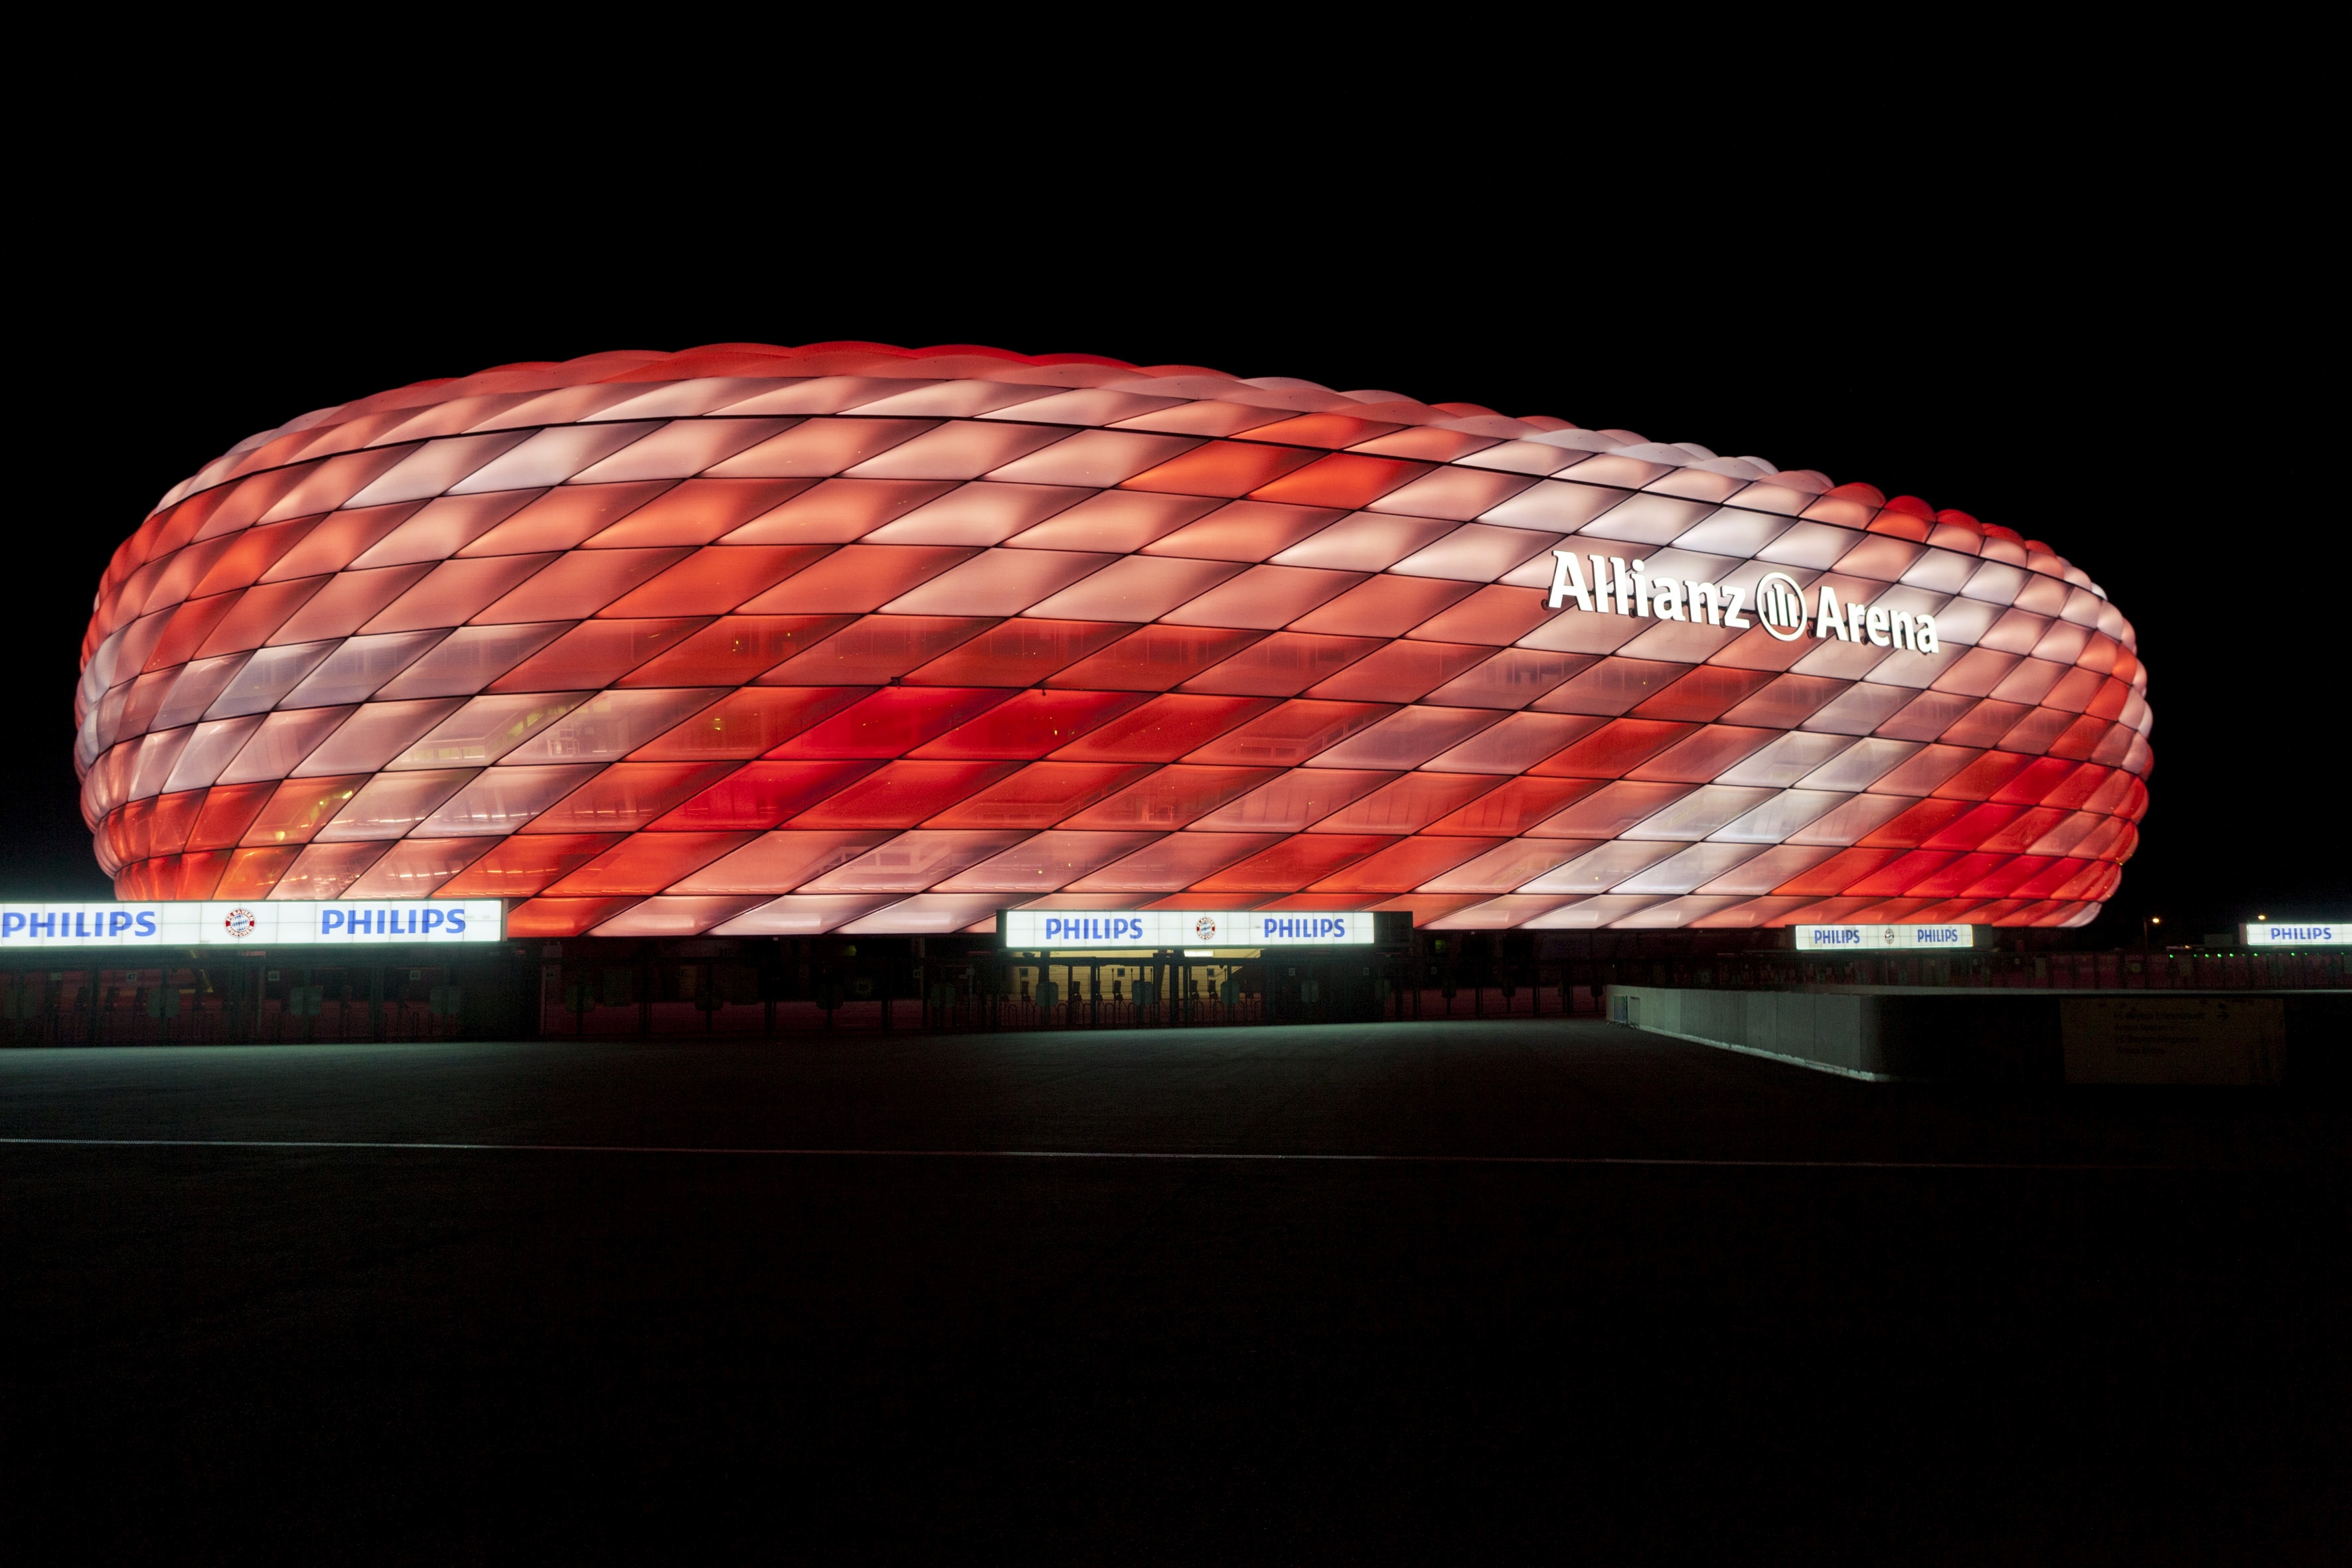 Éclairage Led Connecté De Philips Pour L Allianz Arena Le Bayern De Munich Entame Sa Saison